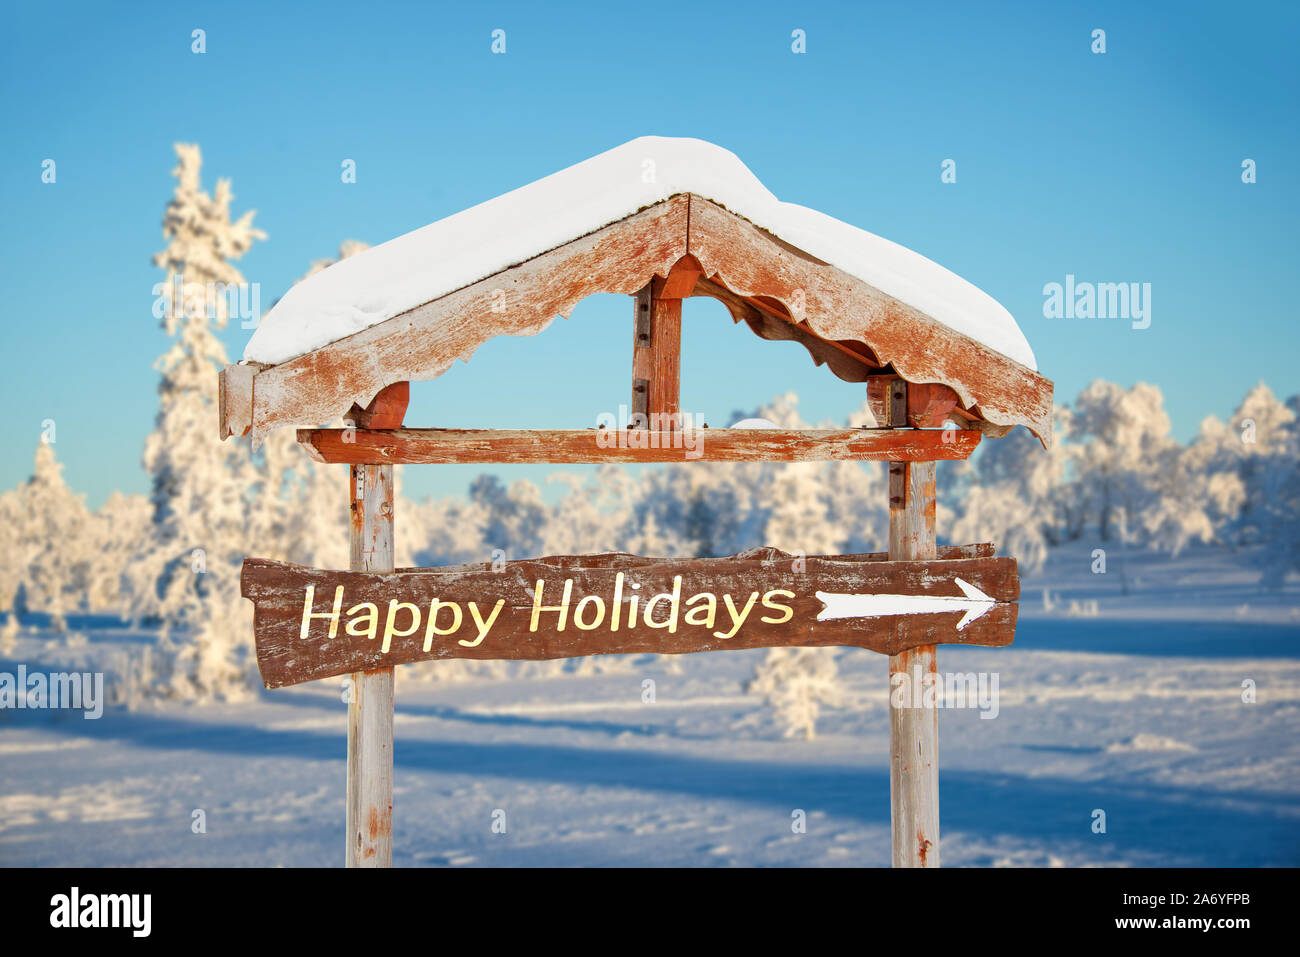 Happy holidays auf einer hölzernen Richtung Zeichen, blauem Himmel und im Winter verschneite baum landschaft Hintergrund frohe Weihnachten Karte geschrieben Stockfoto